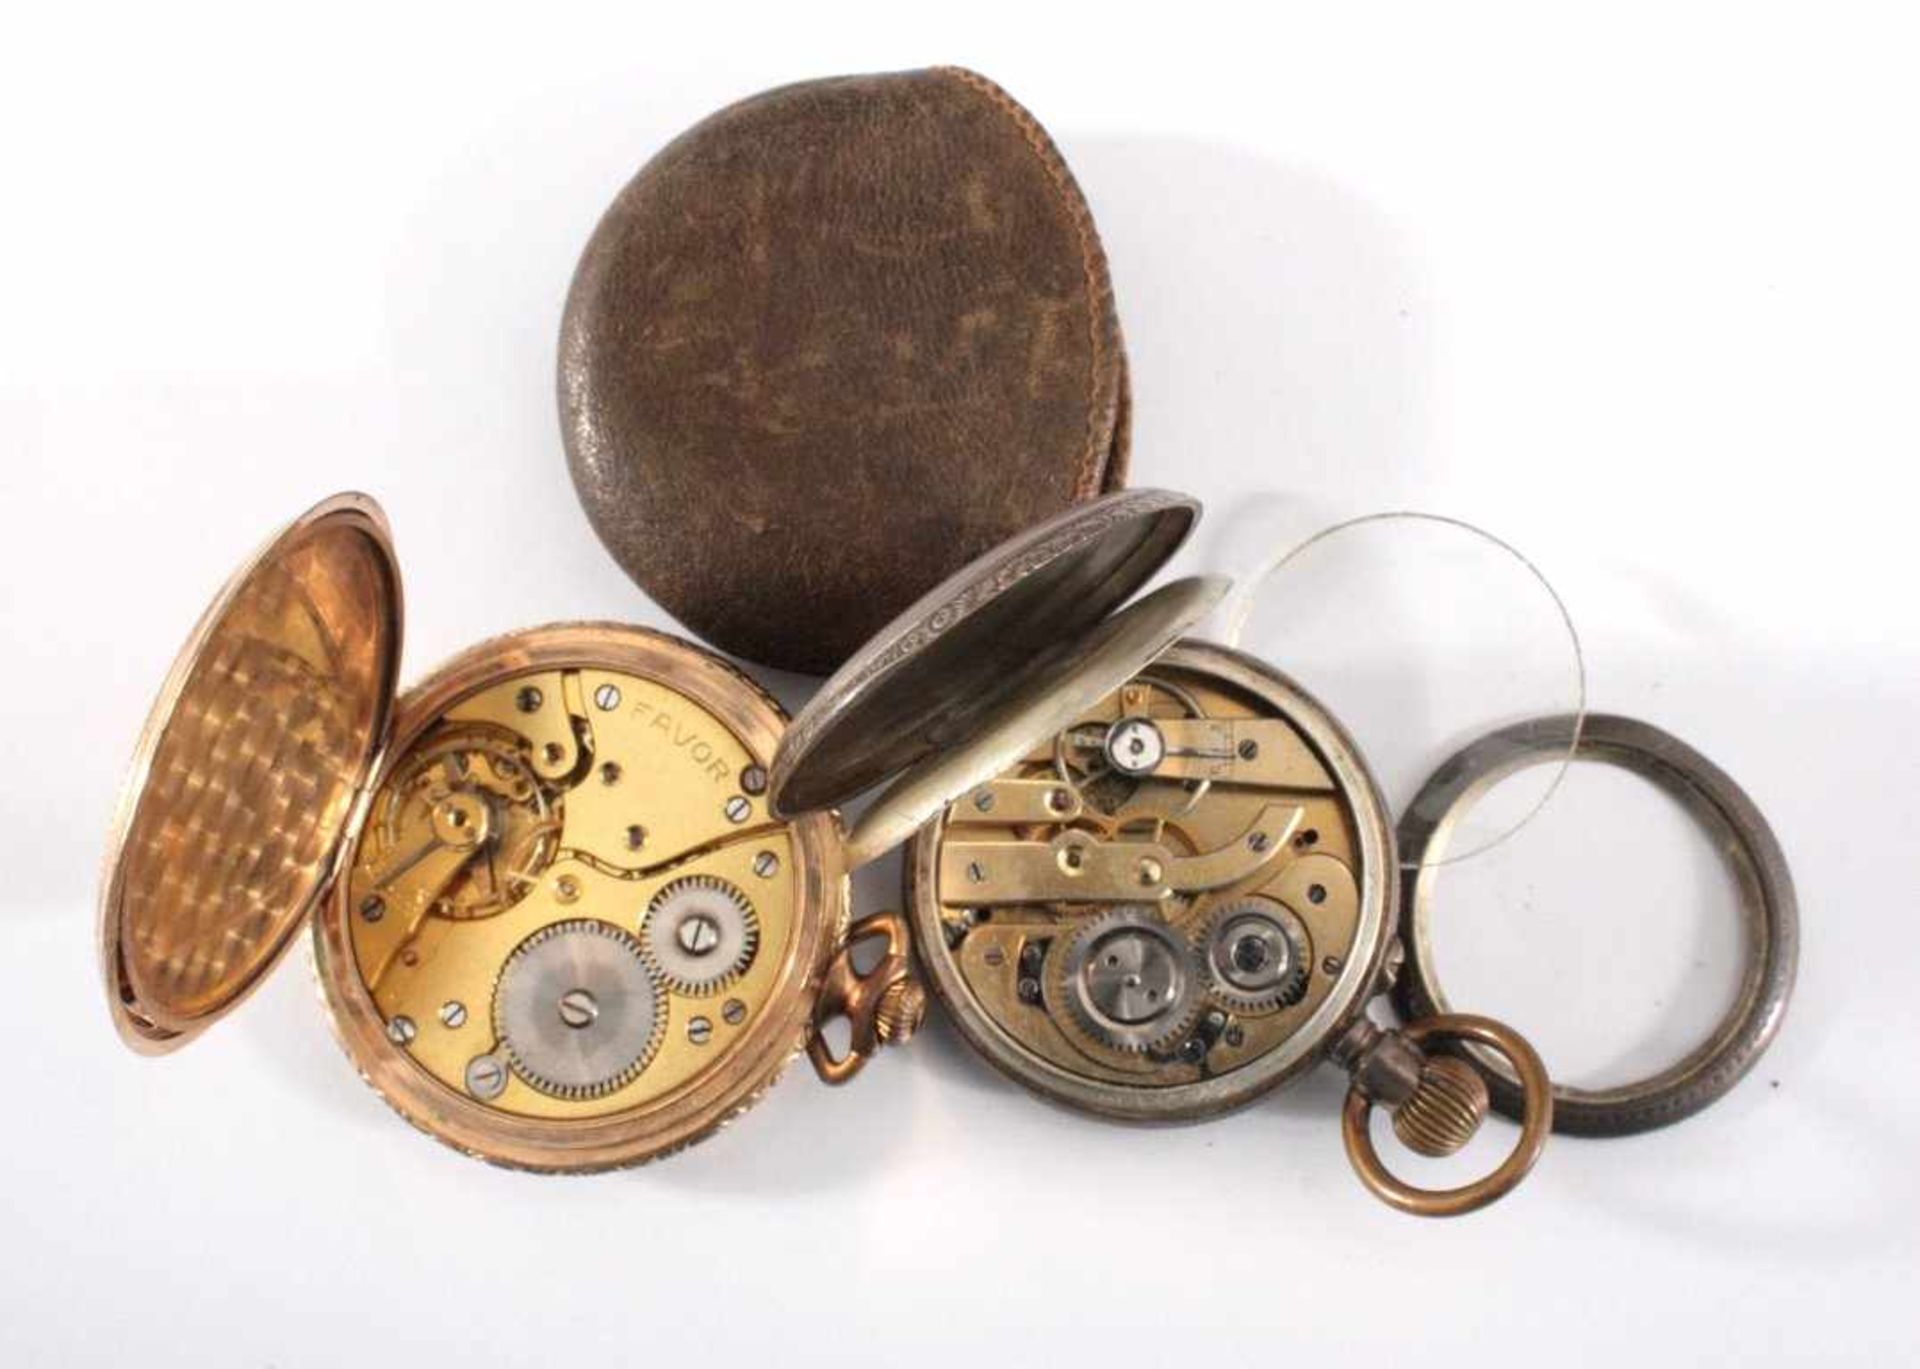 2 Taschenuhren1 Sprungdeckel-Taschenuhr der Marke Favor, vergoldetesGehäuse, Zifferblatt mit - Bild 2 aus 3